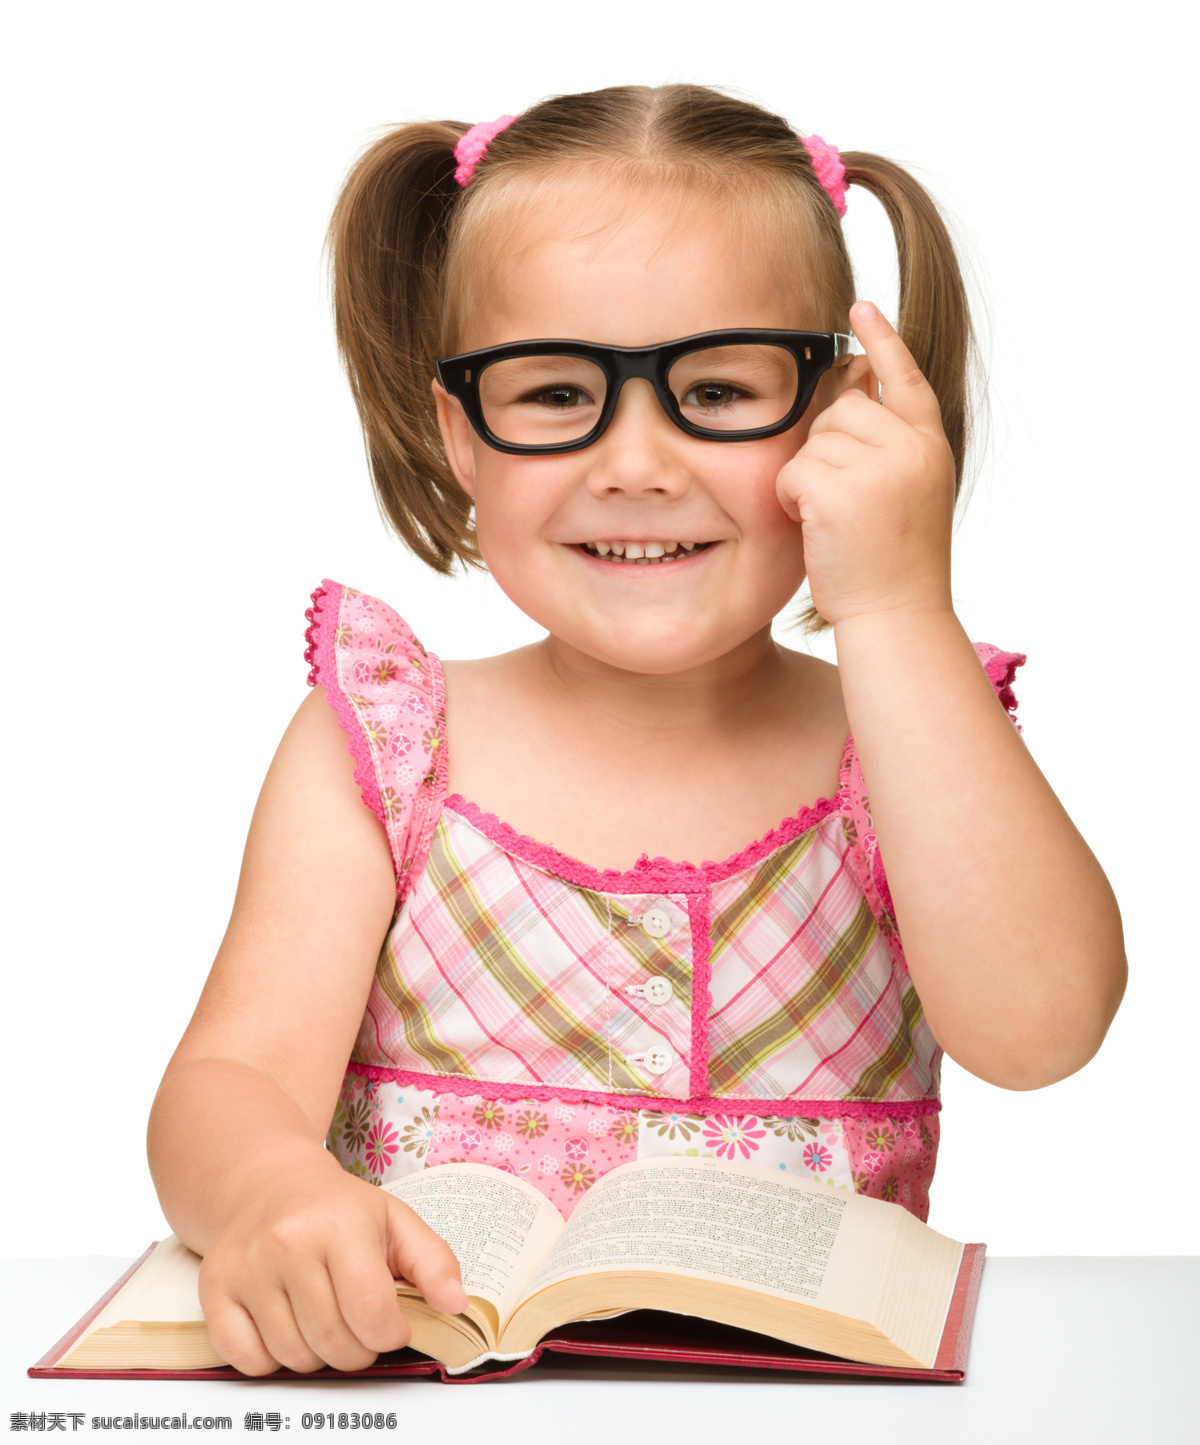 微笑 看书 女孩 黑边眼镜 学习 孩子 儿童 儿童幼儿 儿童图片 人物图片